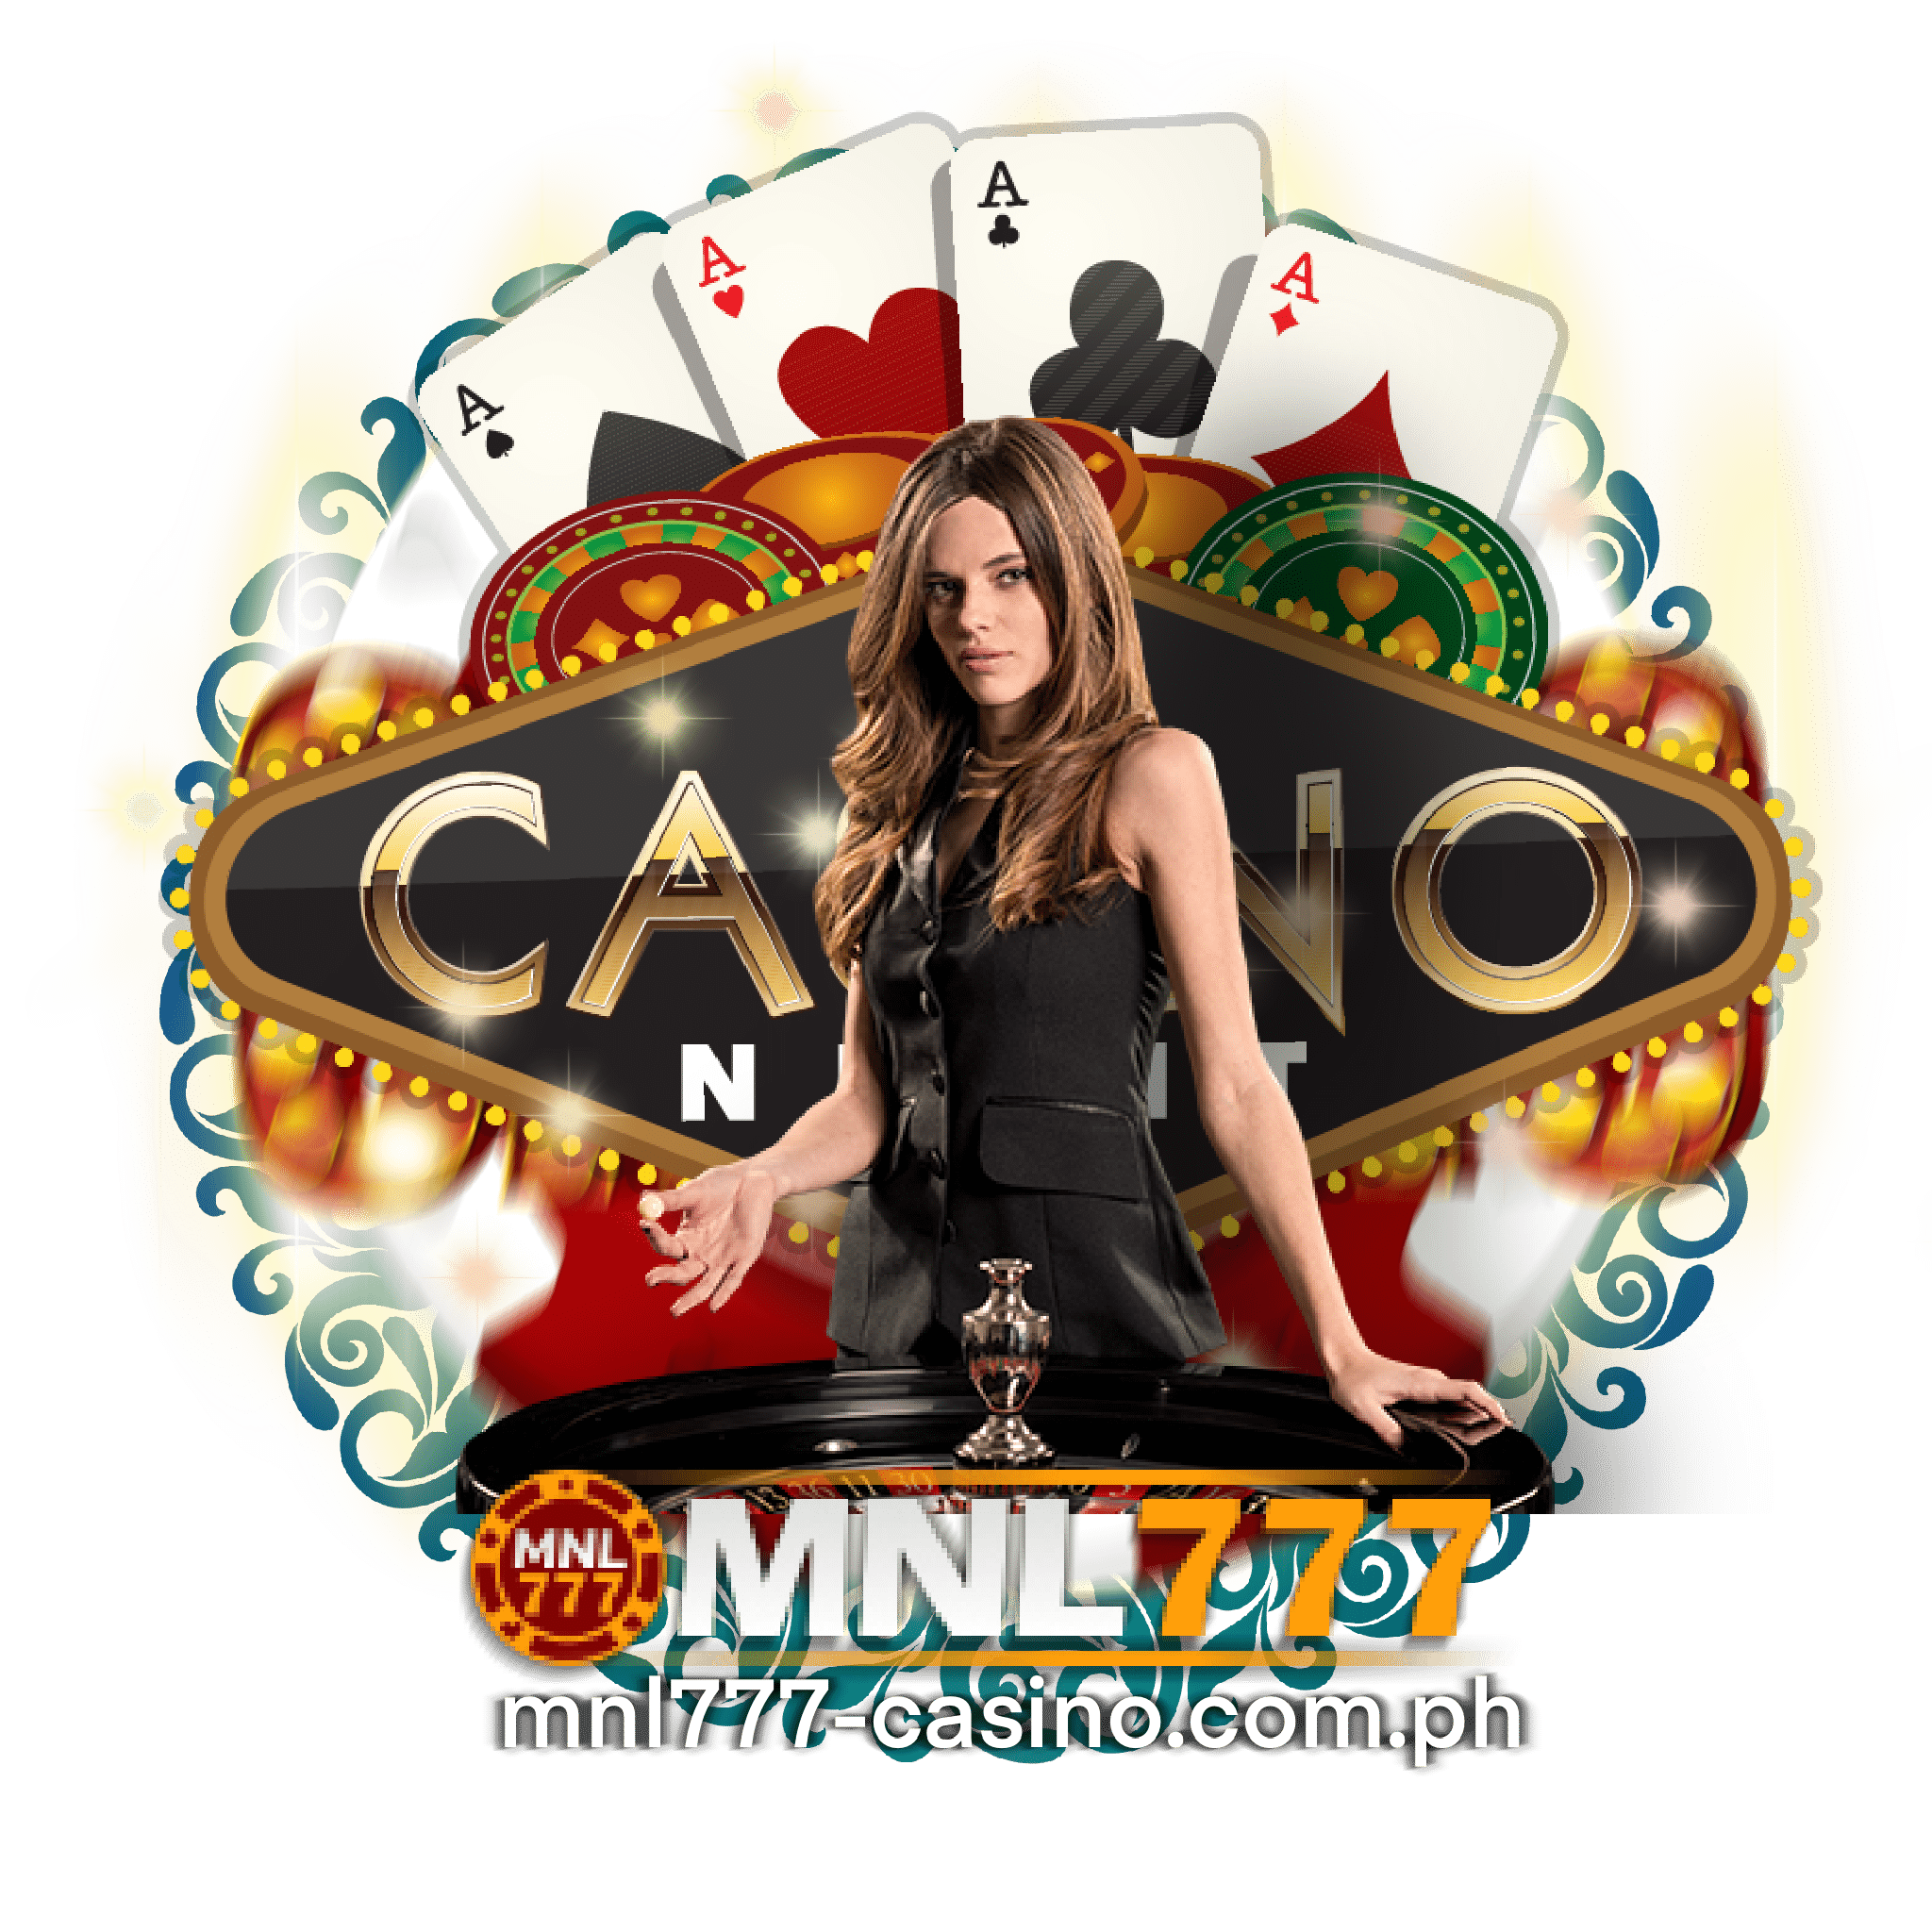 MNL777 Online casino